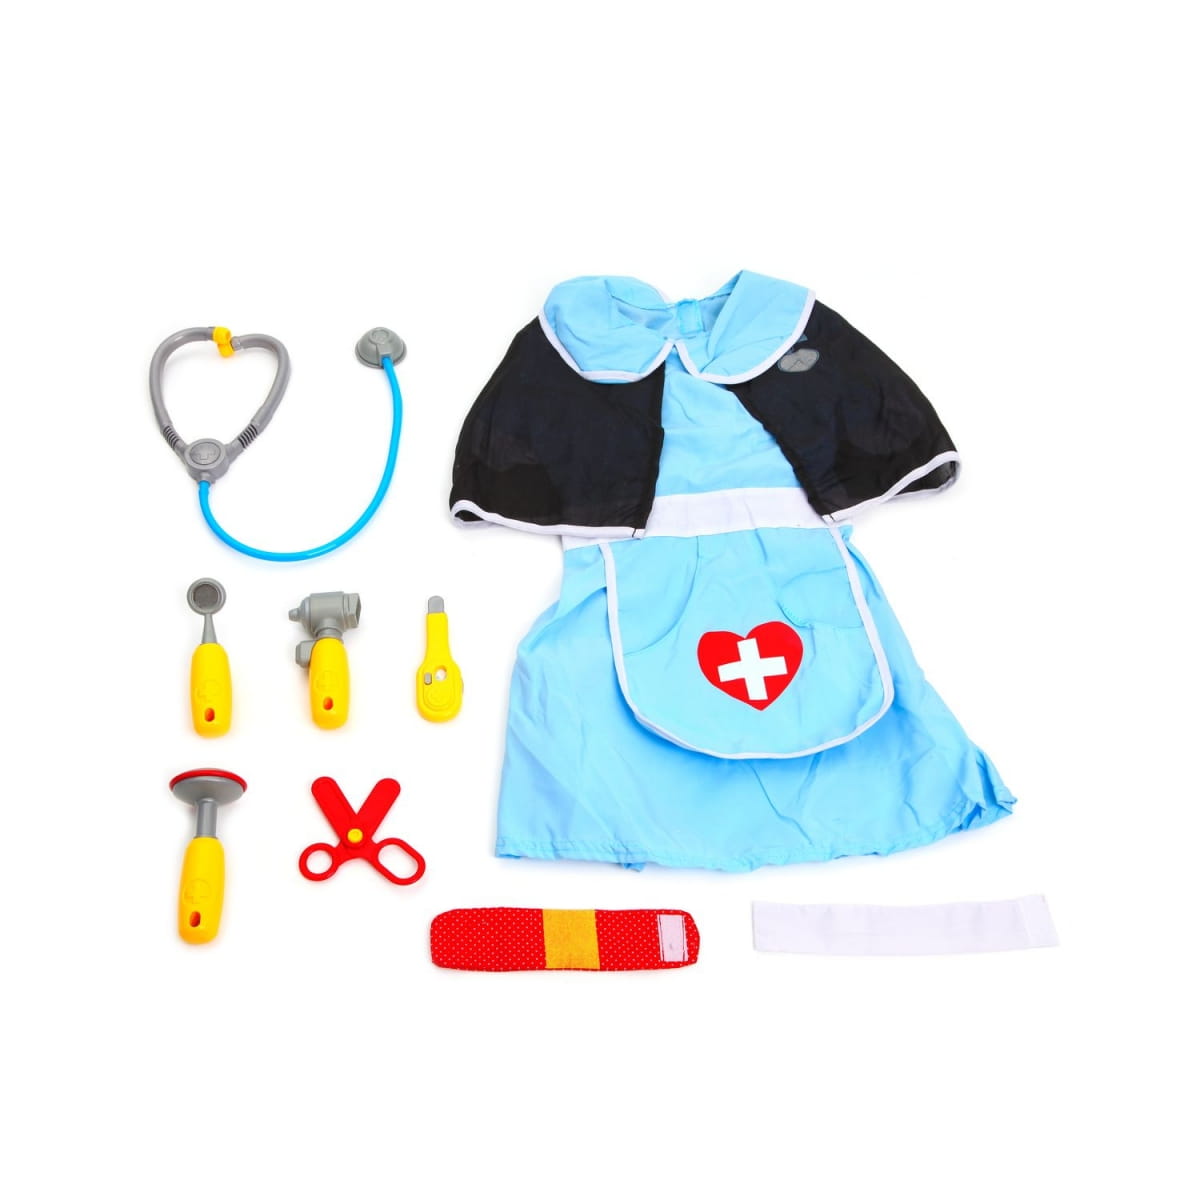    Shenzhen Toys Doctor Set